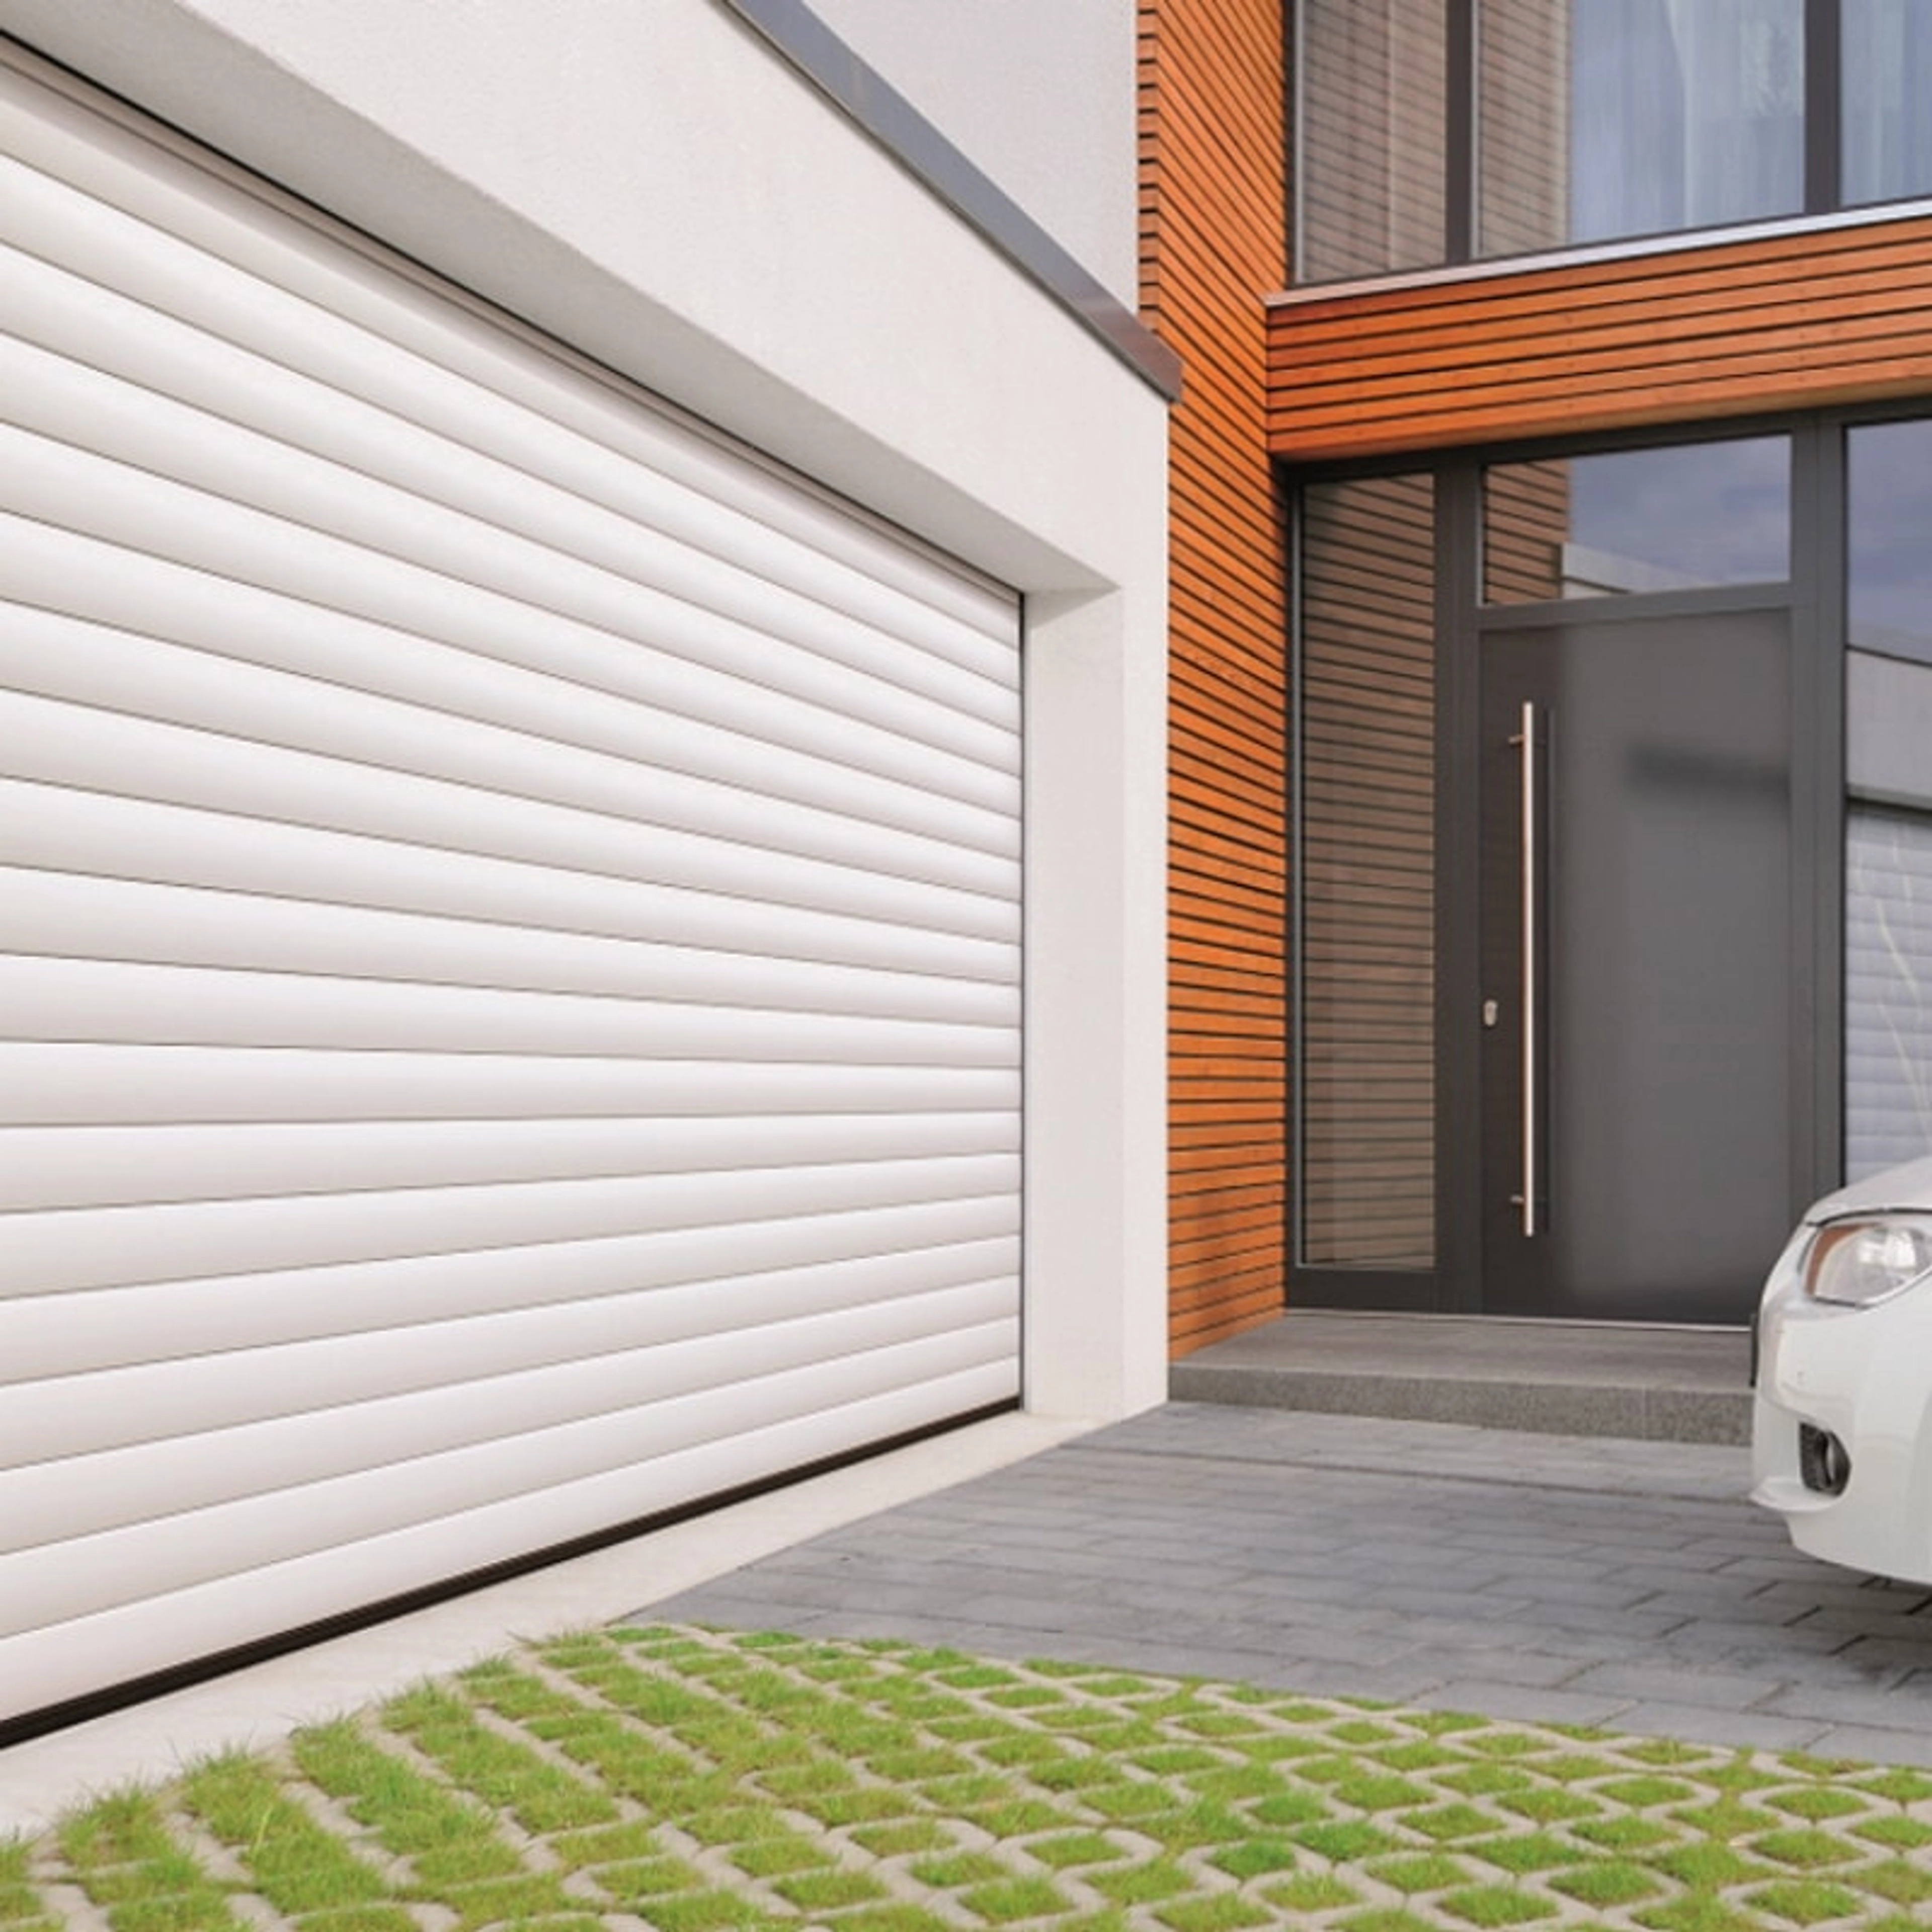 Comment assurer une bonne étanchéité porte de garage ?